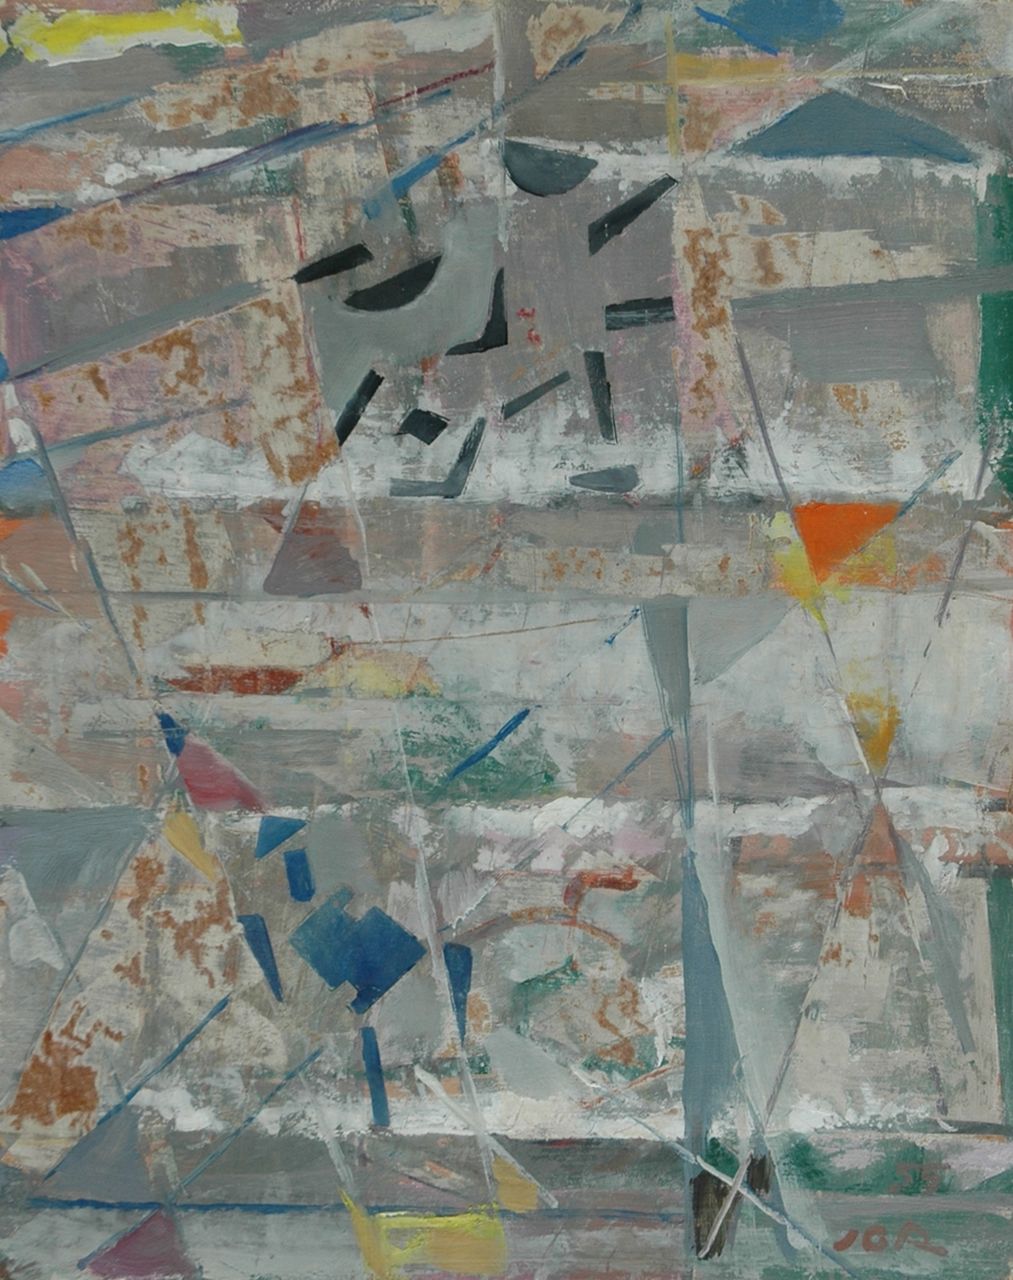 Jordens J.G.  | 'Jan' Gerrit Jordens, Compositie, olieverf op board 50,5 x 40,4 cm, gesigneerd rechtsonder